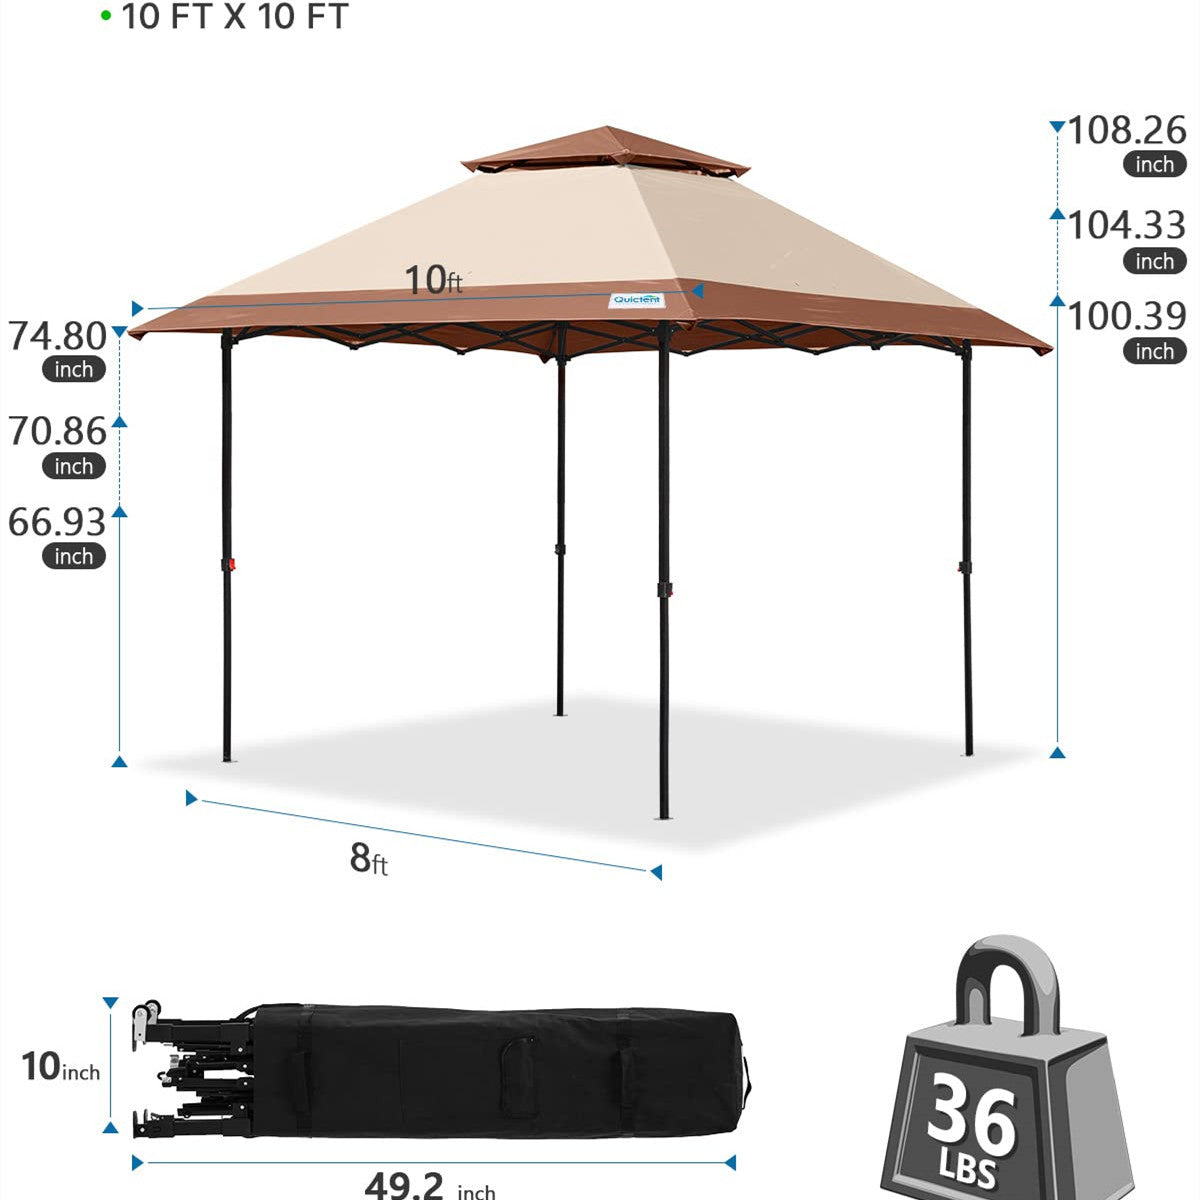 10x10 canopy tent size#color_khaki